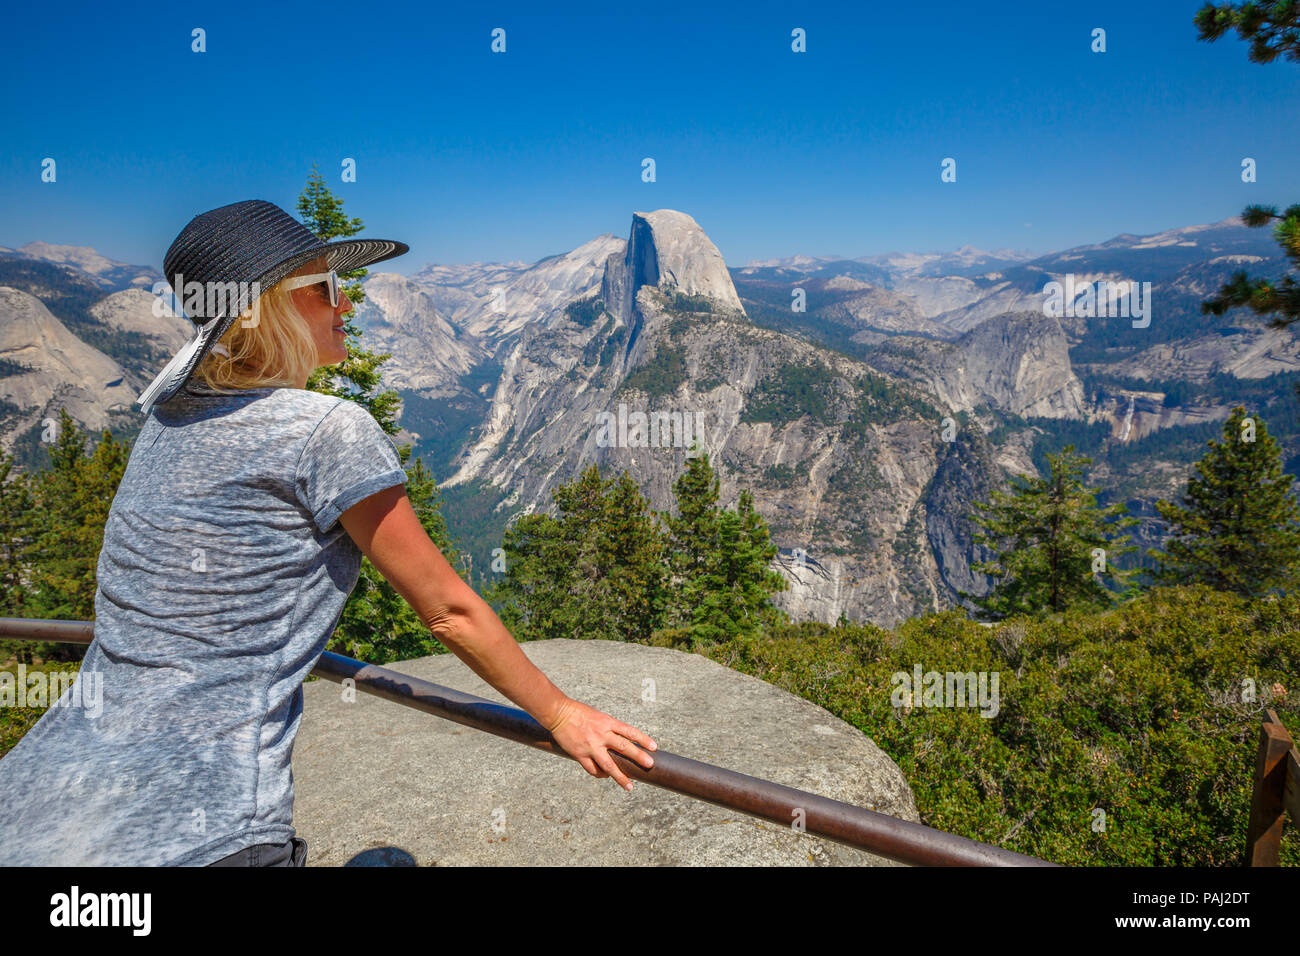 Traveler lifestyle Frau mit Hut, Glacier Point in Yosemite National Park. Entspannen im beliebten Half Dome vom Glacier Point übersehen. American travel urlaub Konzept. Kalifornien, USA. Stockfoto